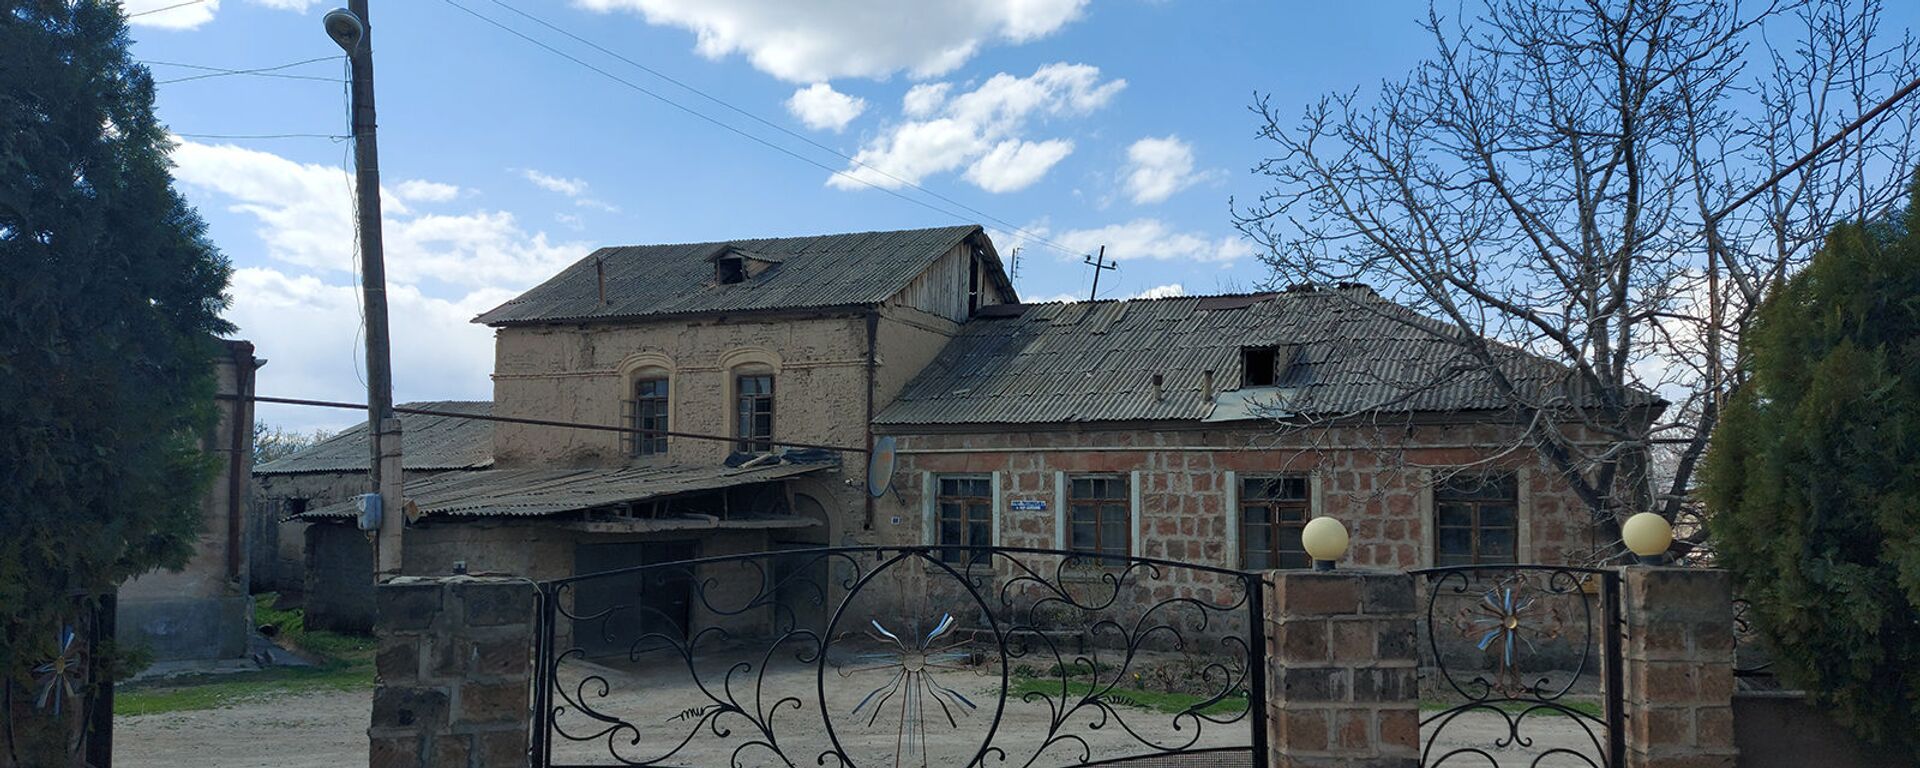 Село Верин Двин, Араратская область - Sputnik Армения, 1920, 07.04.2021